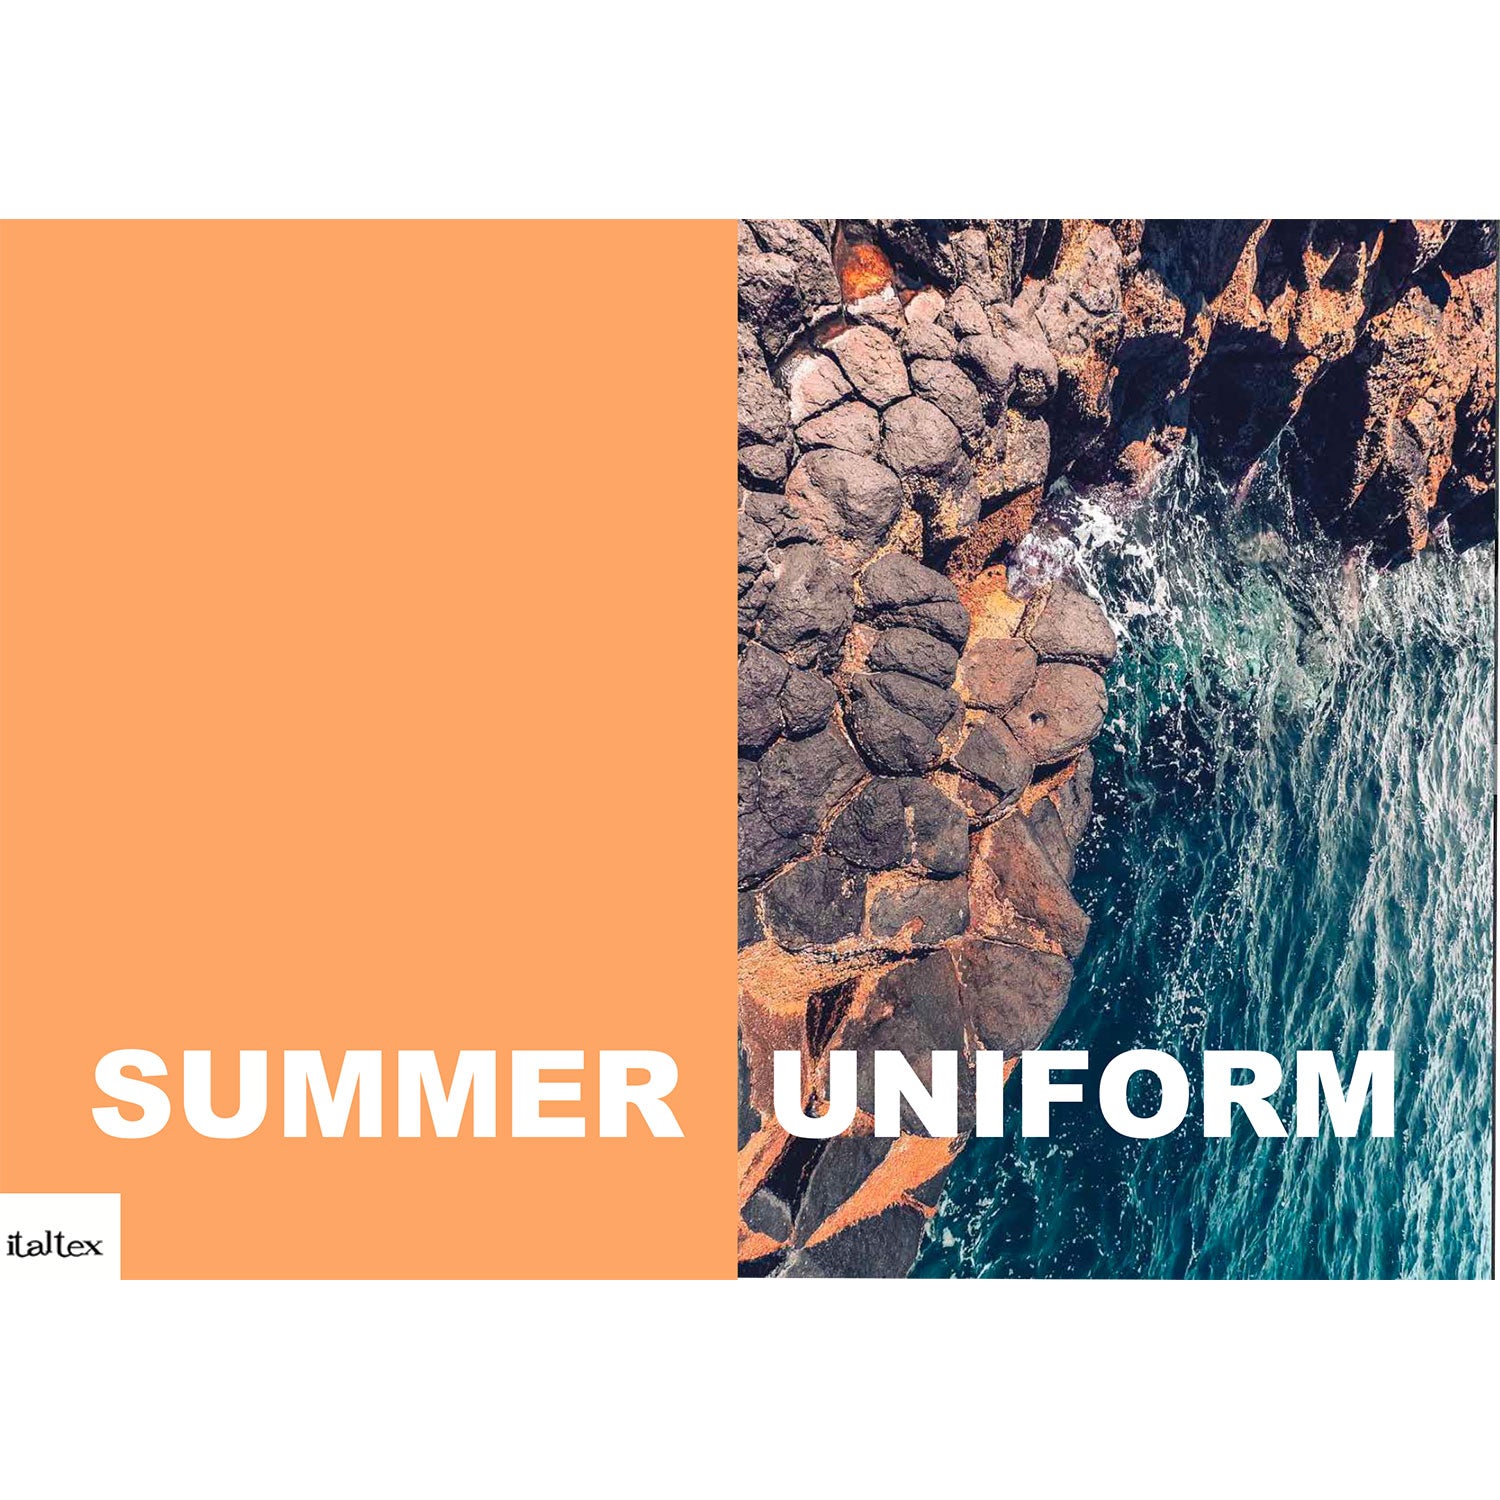 Womenswear Summer Uniforms SS 2020